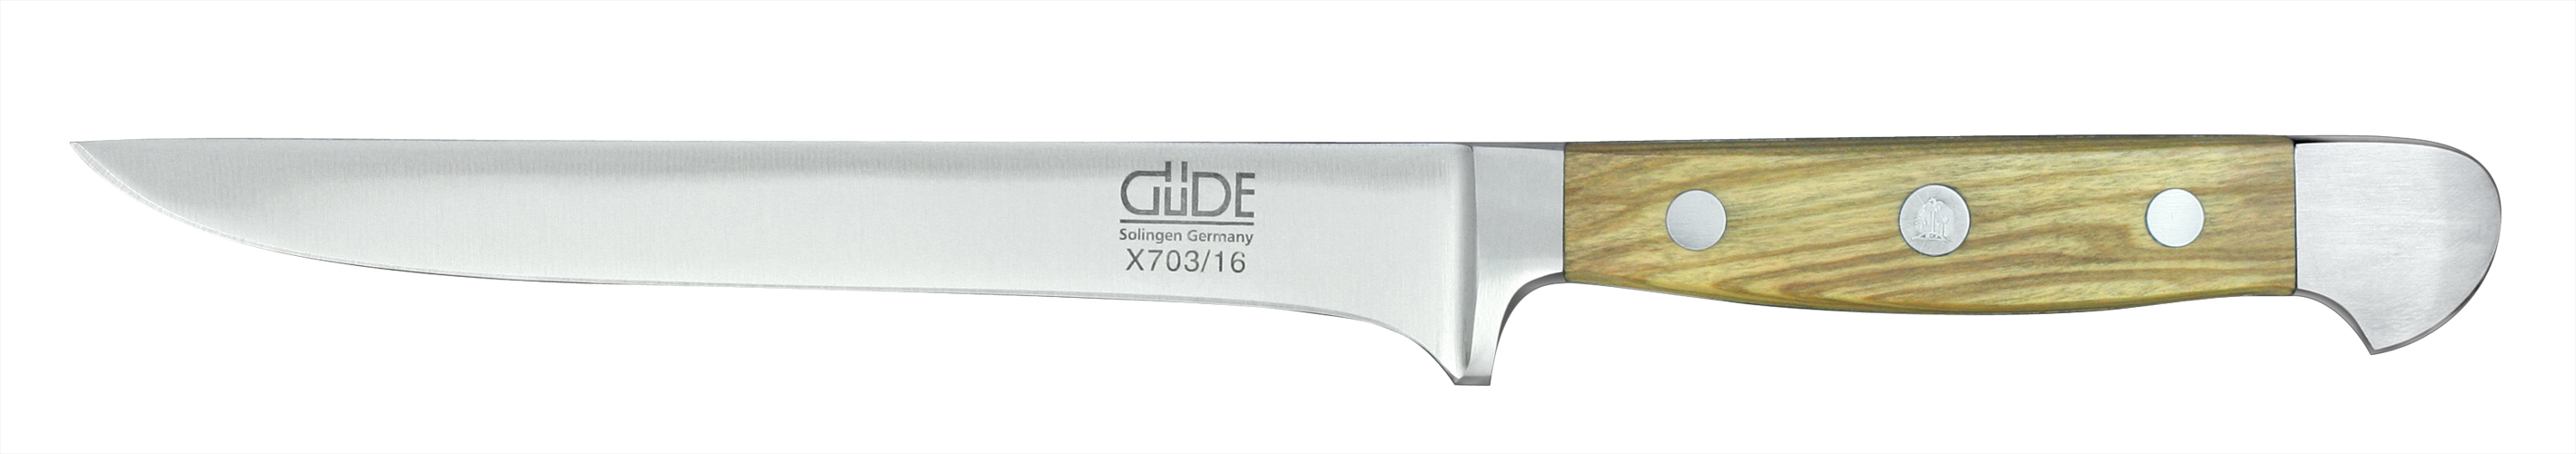 Güde Alpha Olive Ausbeinmesser 16 cm / CVM-Messerstahl mit Griffschalen aus Olivenholz